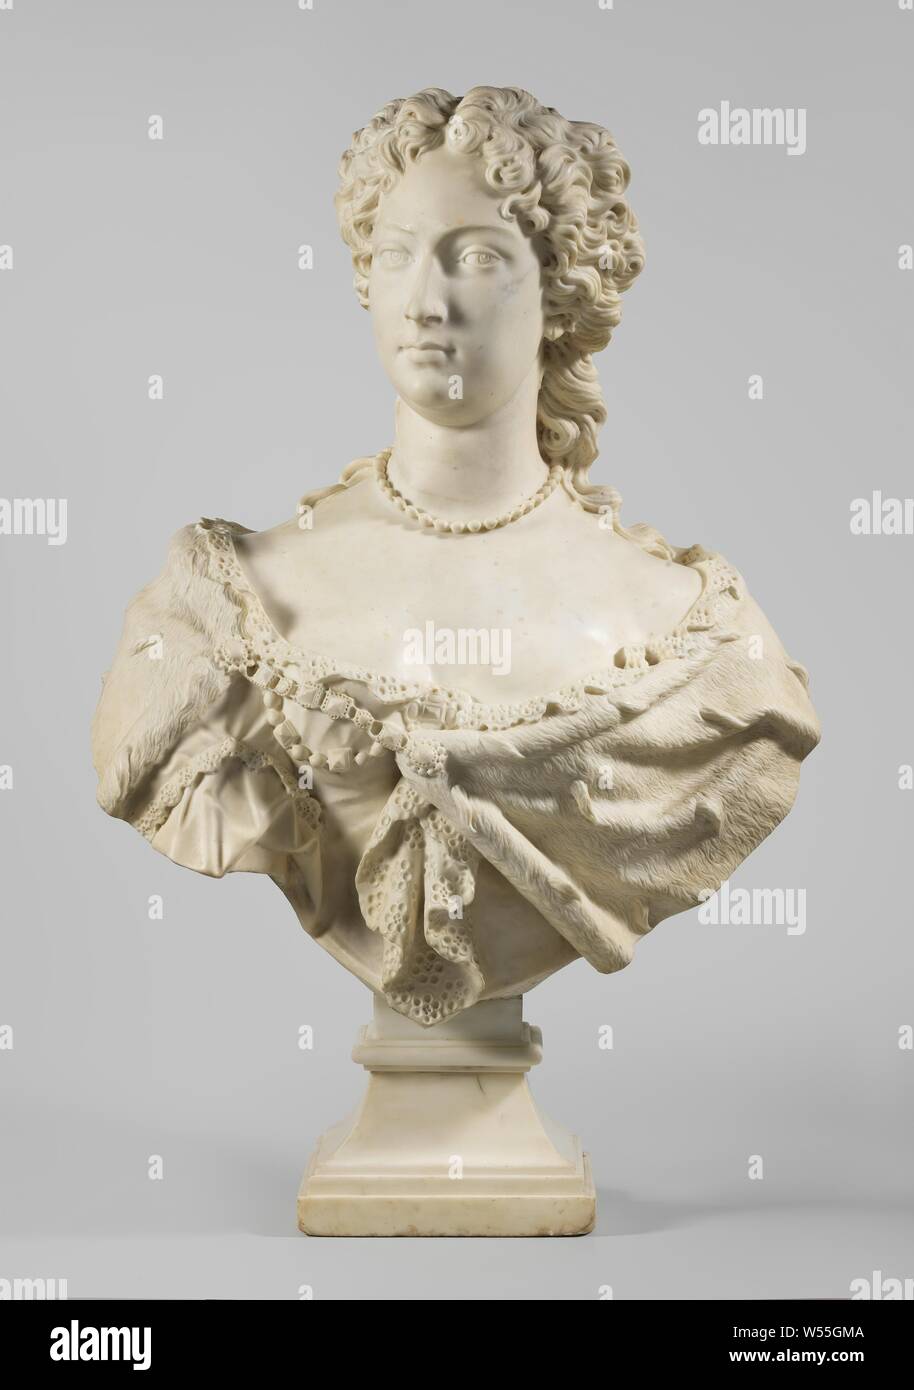 Busto di Maria II Stuart, regina d'Inghilterra (1662-1694), moglie di Re Stadholder Guglielmo III, leggermente lateralmente a mezza lunghezza busto in marmo bianco su un quadrato, profilata, originale a piedi. La persona raffigurata è vestito con l'ermellino manto della sua royal stato, sopra un vestito con un pizzo. Il mantello è tenuto insieme da una fibbia / set cinghia con taglio gemme. Indossa una collana di perle stretto intorno al suo collo. Il capello è legata all'indietro in un elegante bun., John Michael Rysbrack, Londra, c. 1735 - c. 1740, marmo (rock), h 84 cm Foto Stock